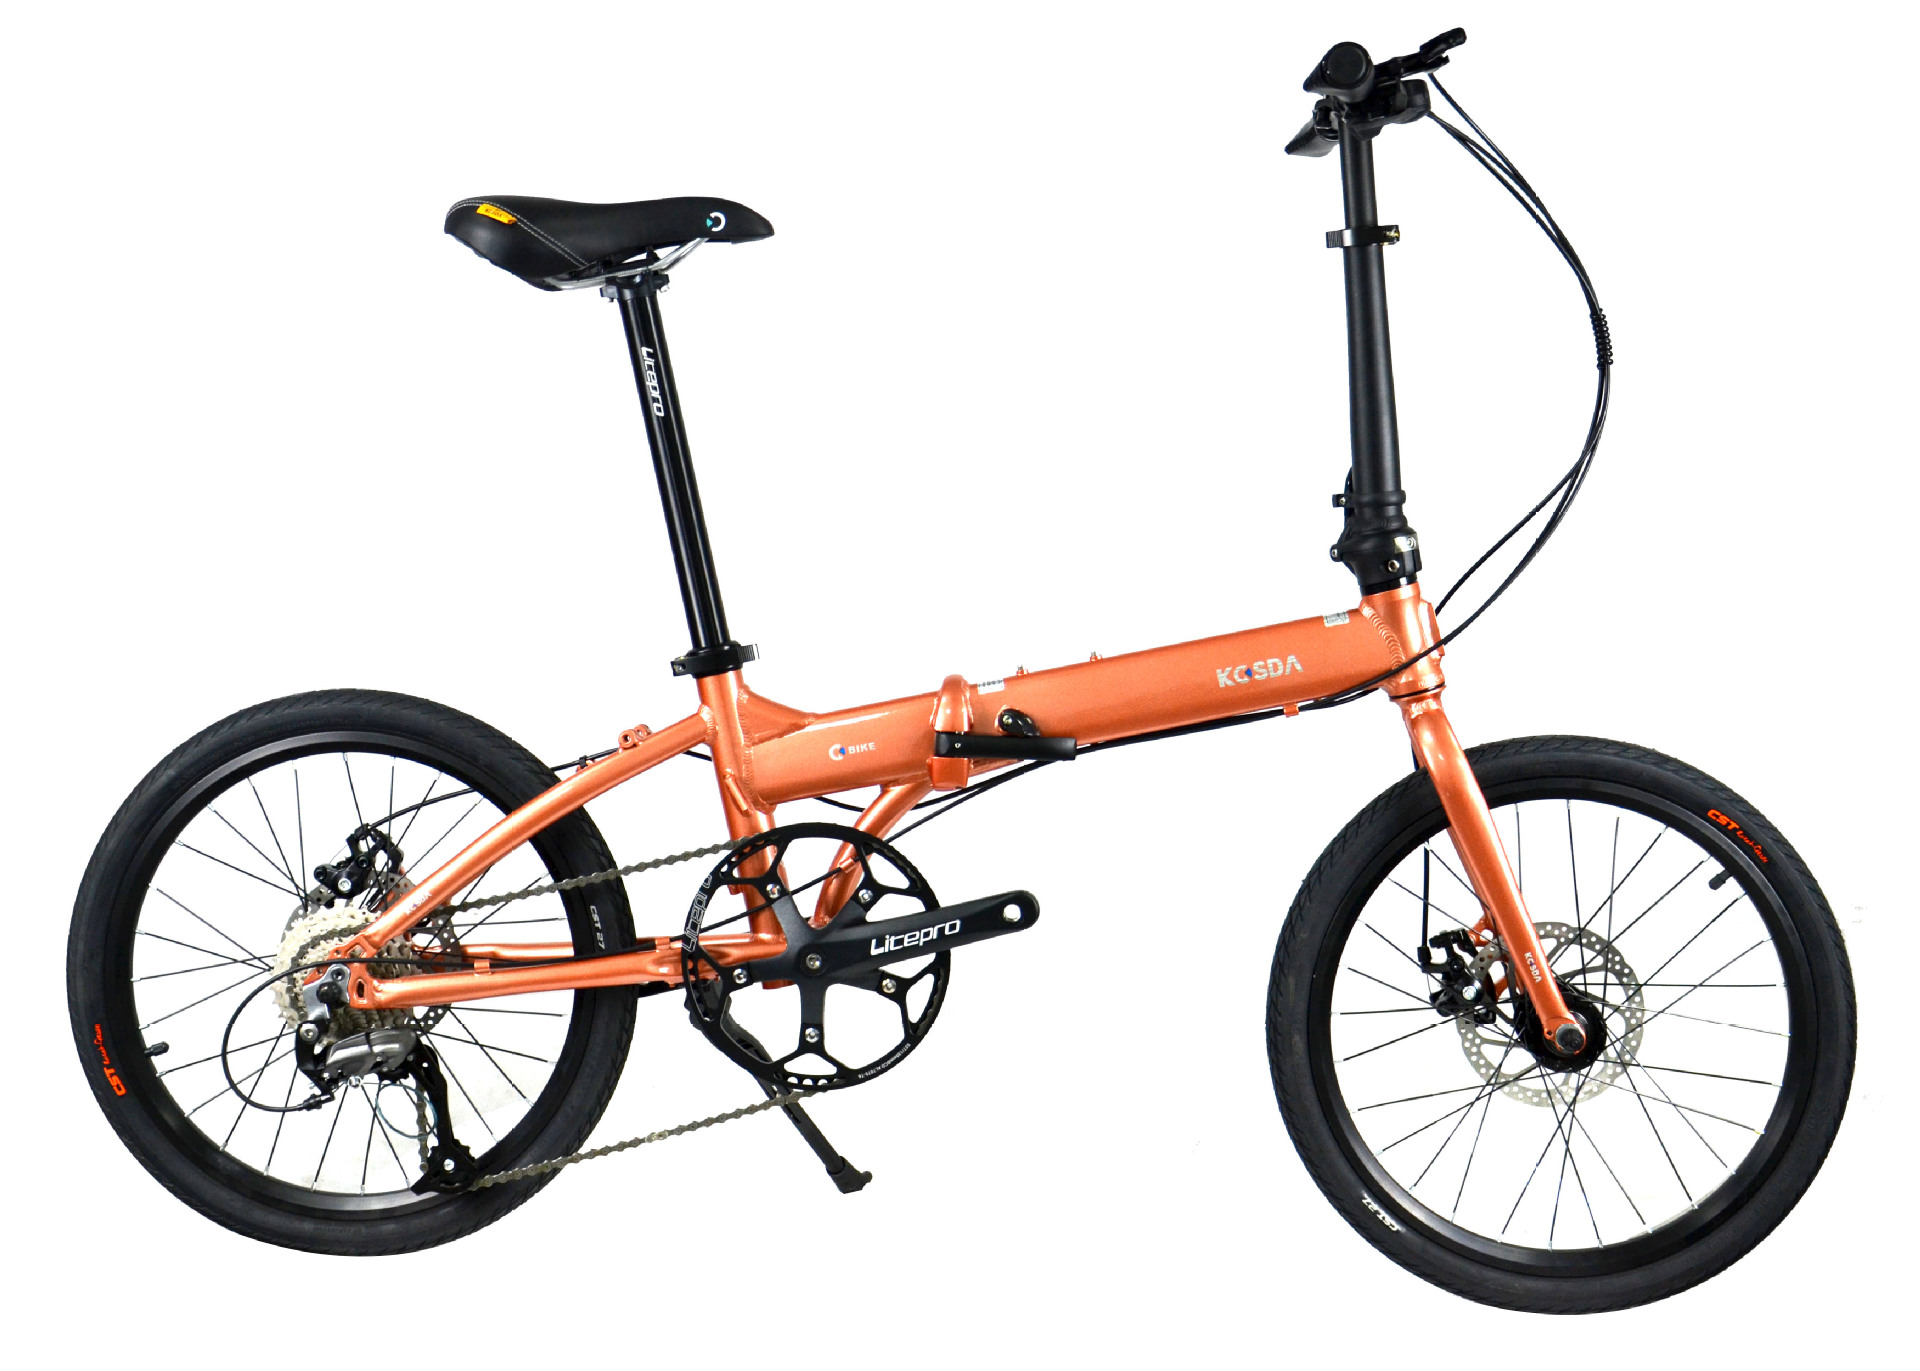 折叠自行车 kosda成人 男女 超轻 便携 20寸铝合金 9速 自行车